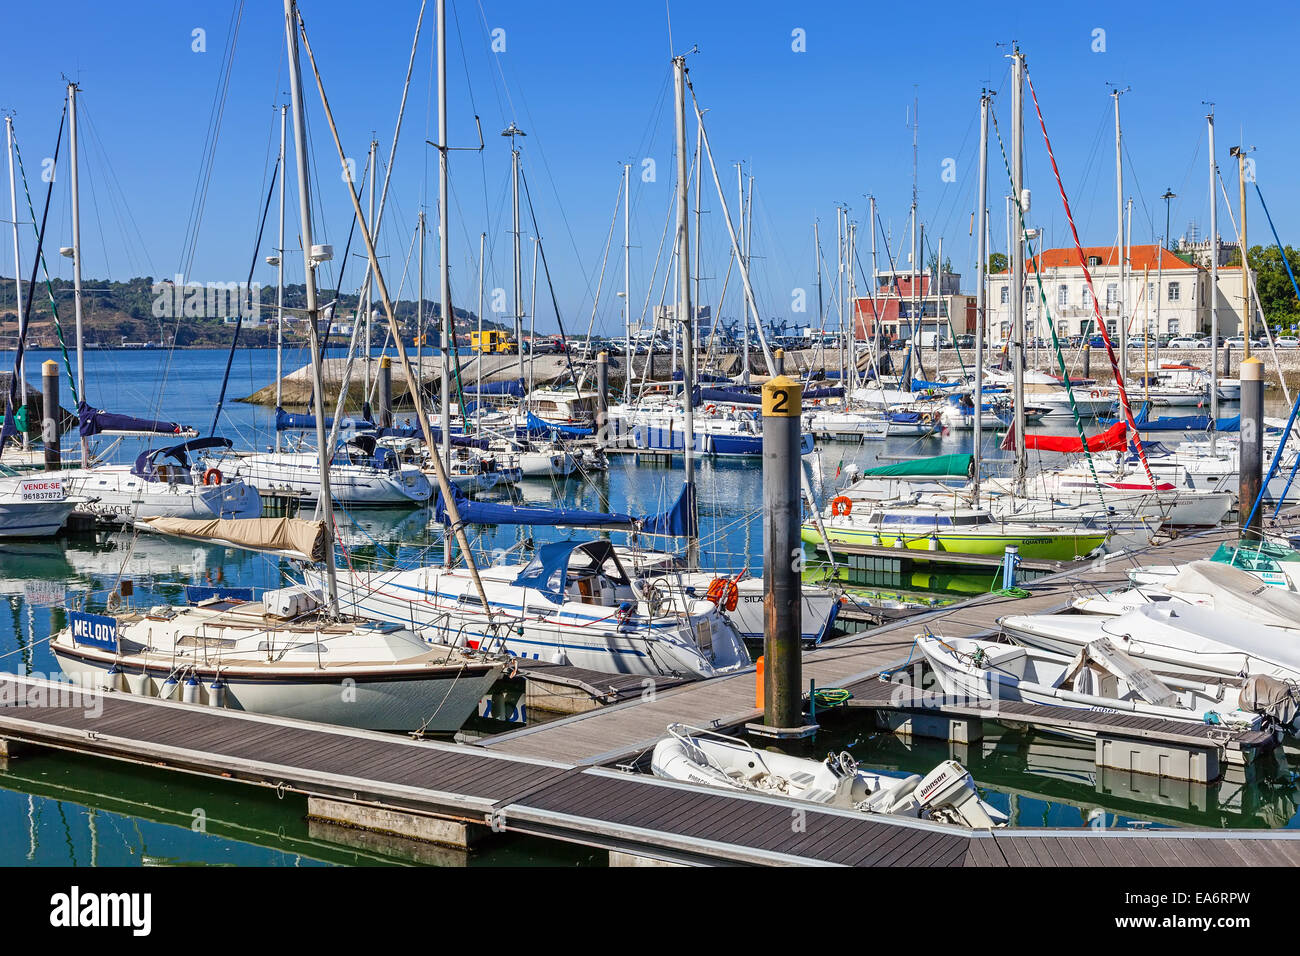 Doca Bom Sucesso Marina in Belem Viertel mit angedockten Yachten, Segelboote und Motorboote im Sommer gefüllt. Lissabon, Portugal Stockfoto